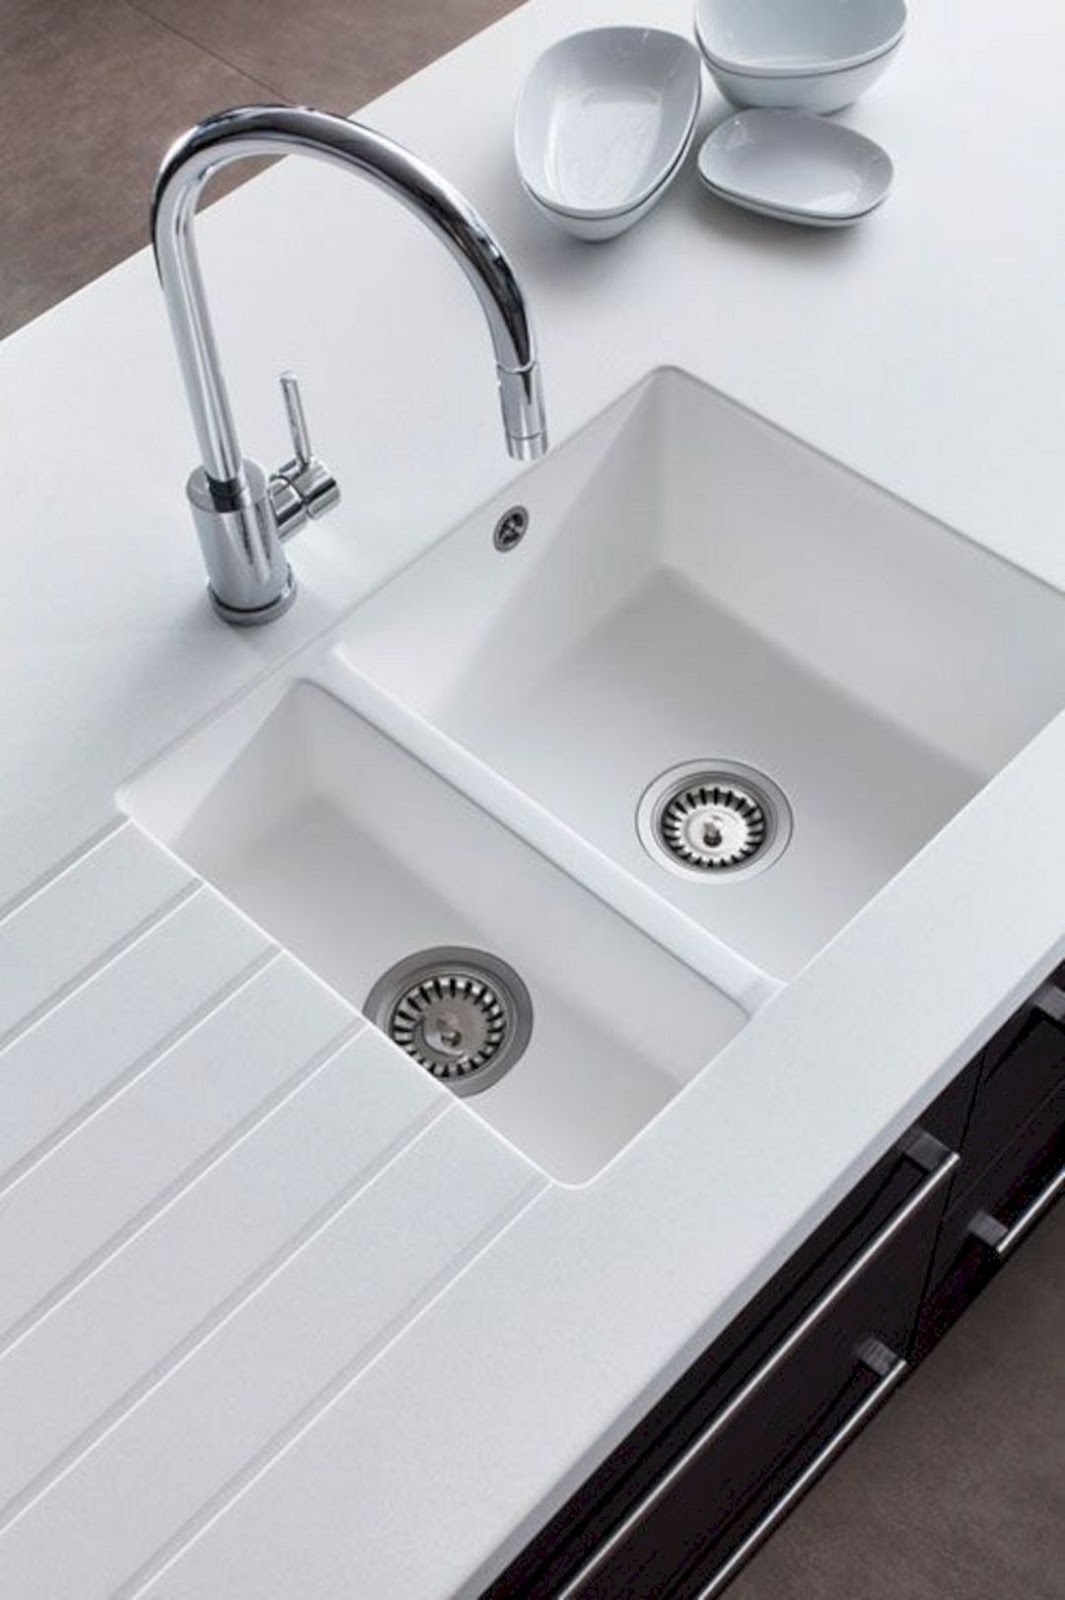 Modern Kitchen Sink Designs and Ideas 2020 